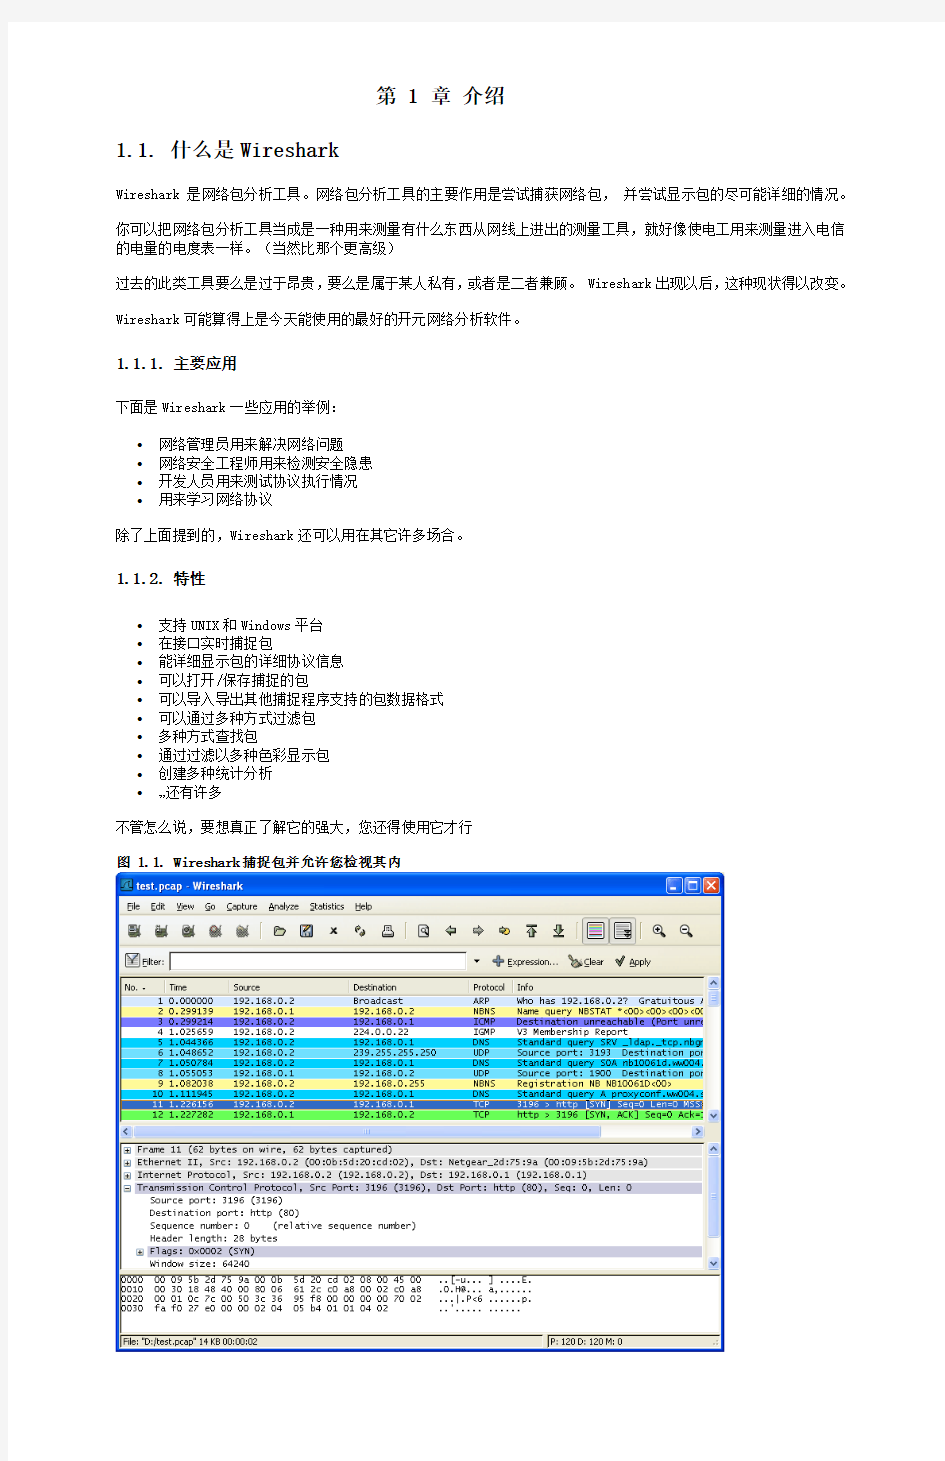 Wireshark教程-中文版